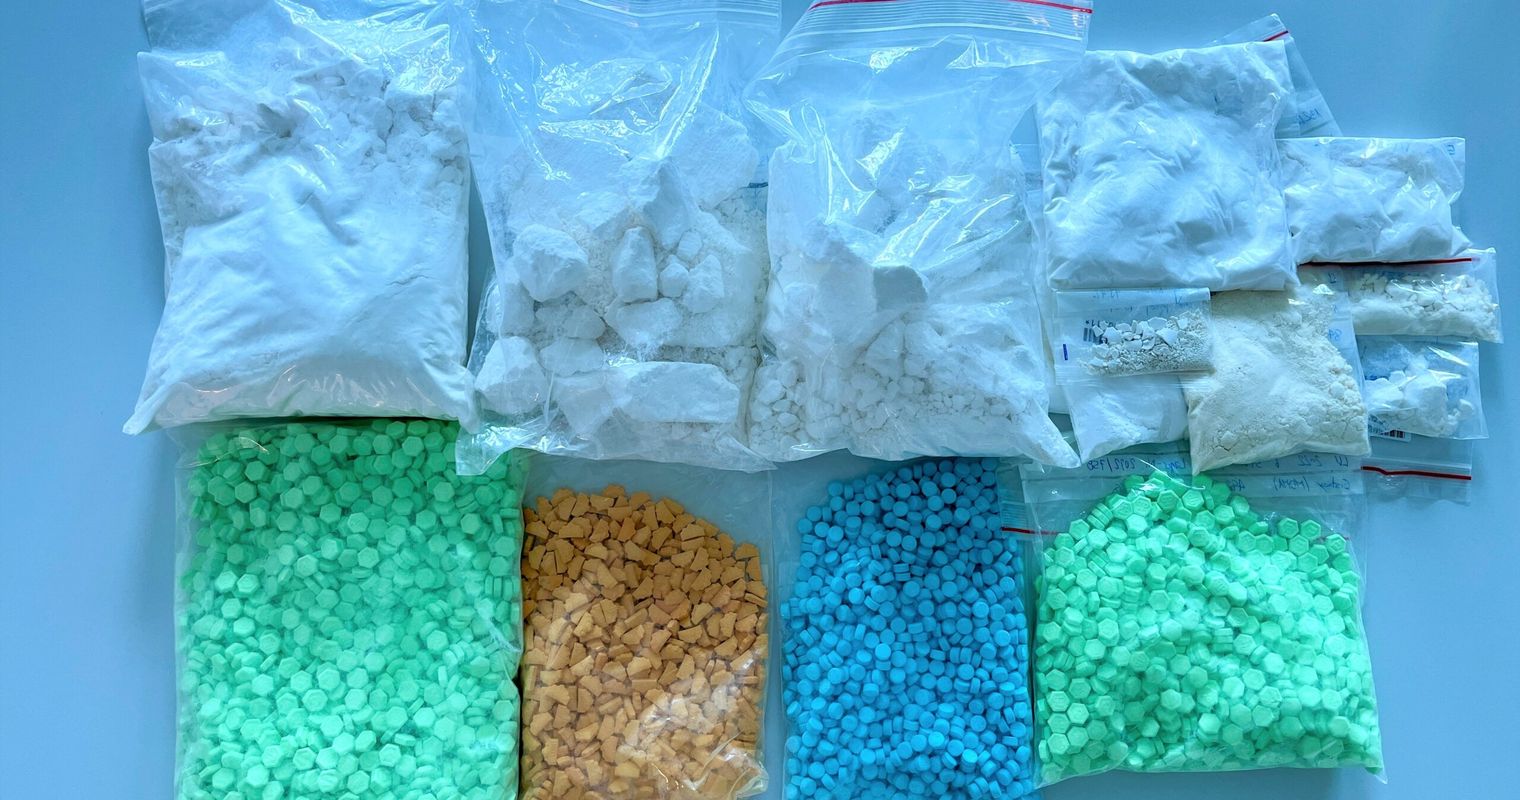 Polizei erwischt mutmassliche Dealer beim Kokain reinigen